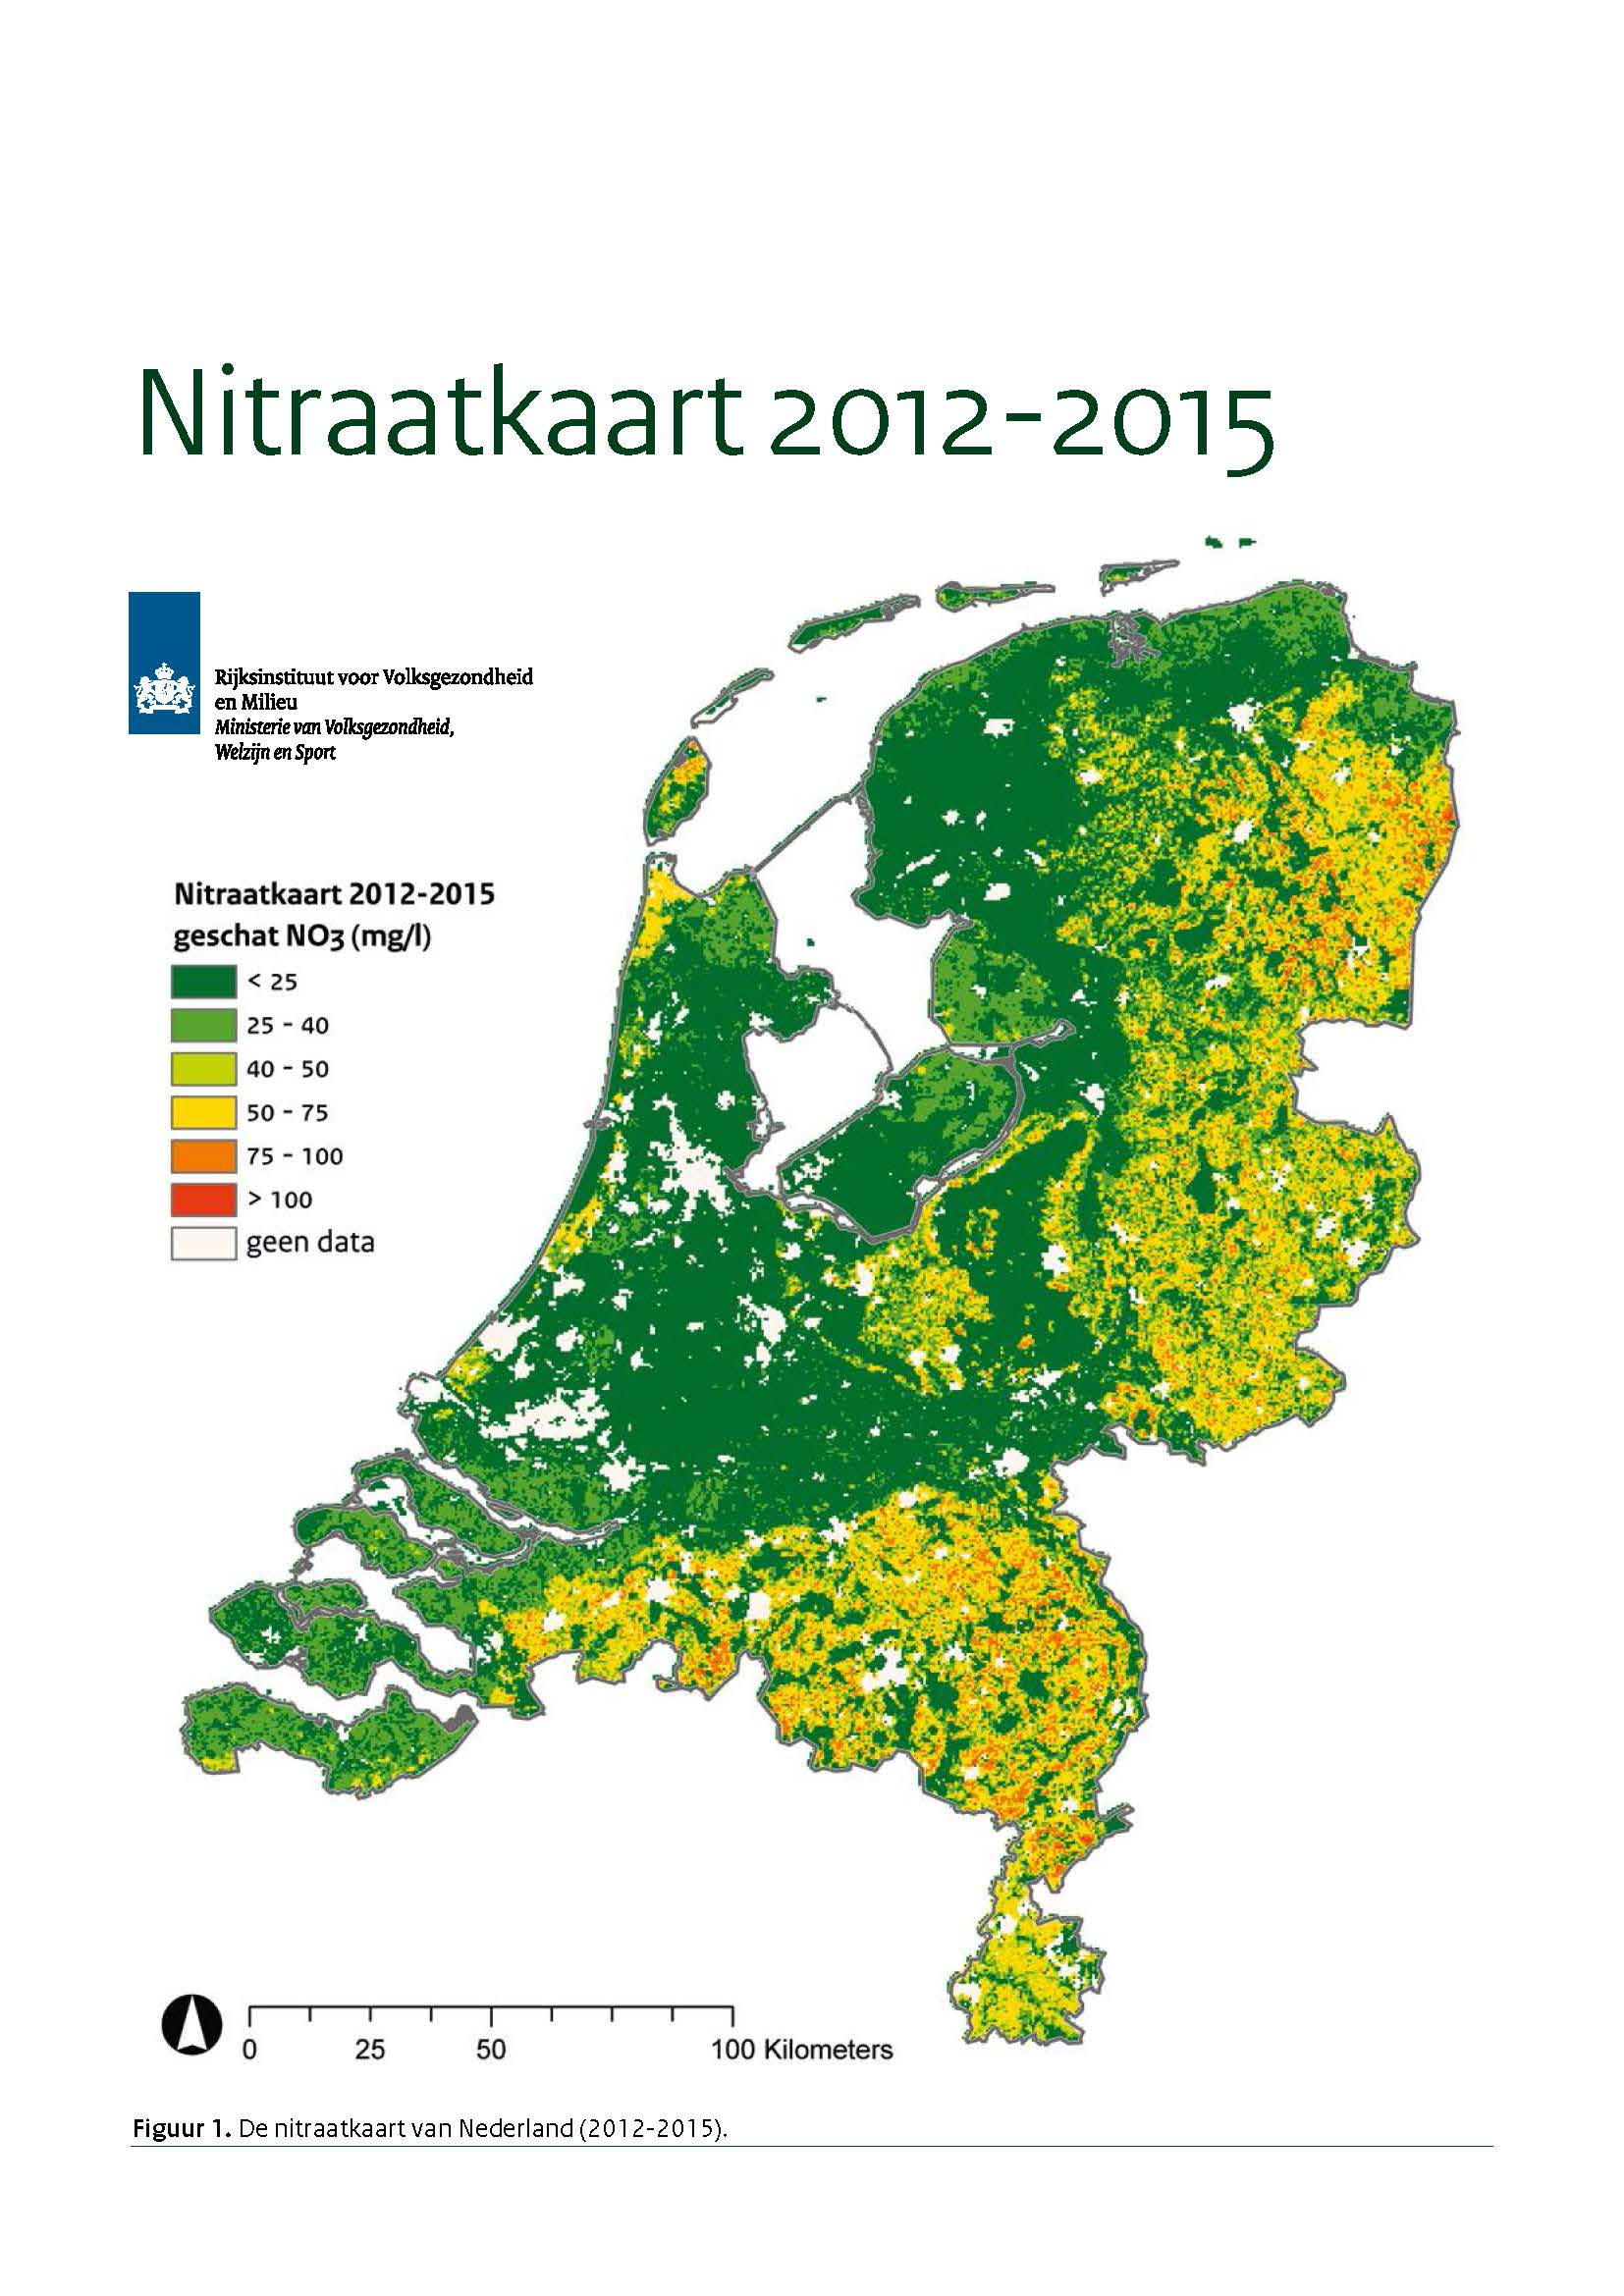 Nitraatkaart van Nederland 2012-2015